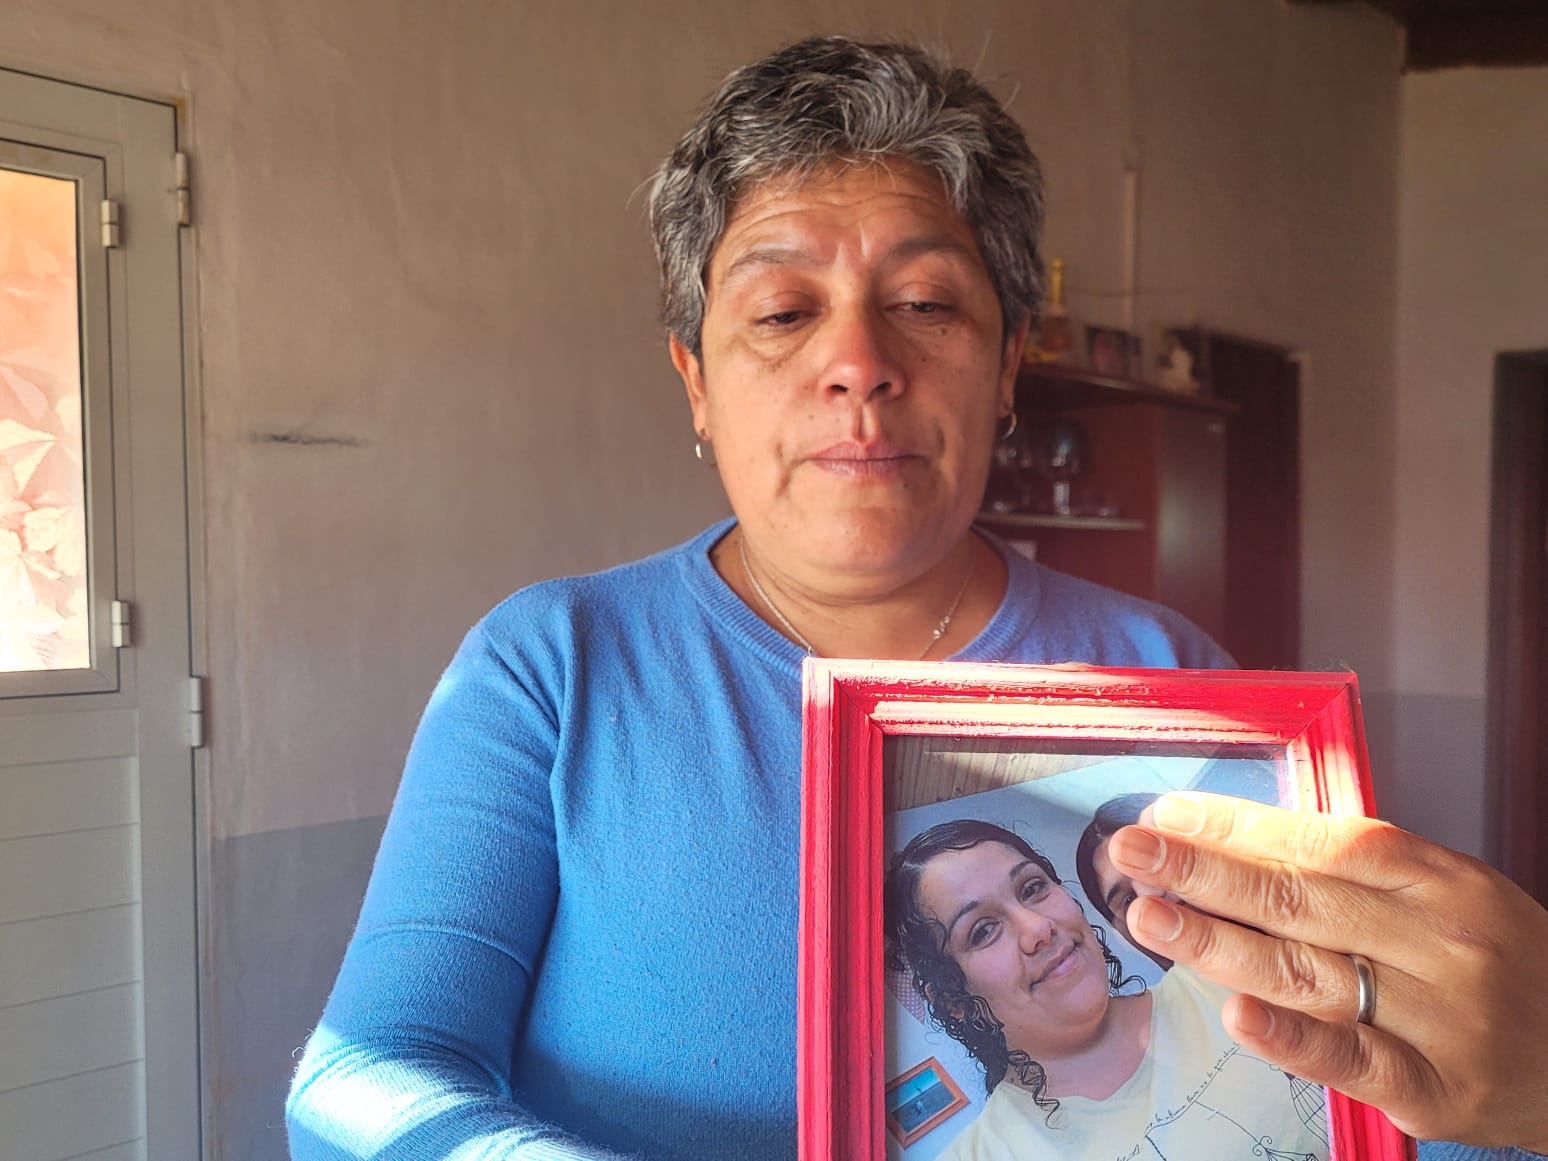 El 30 de octubre de 2020 la joven fue asesinada en la vivienda que había compartido con Pazos. Su cuerpo presentaba 37 lesiones. Foto Martín Brunella.